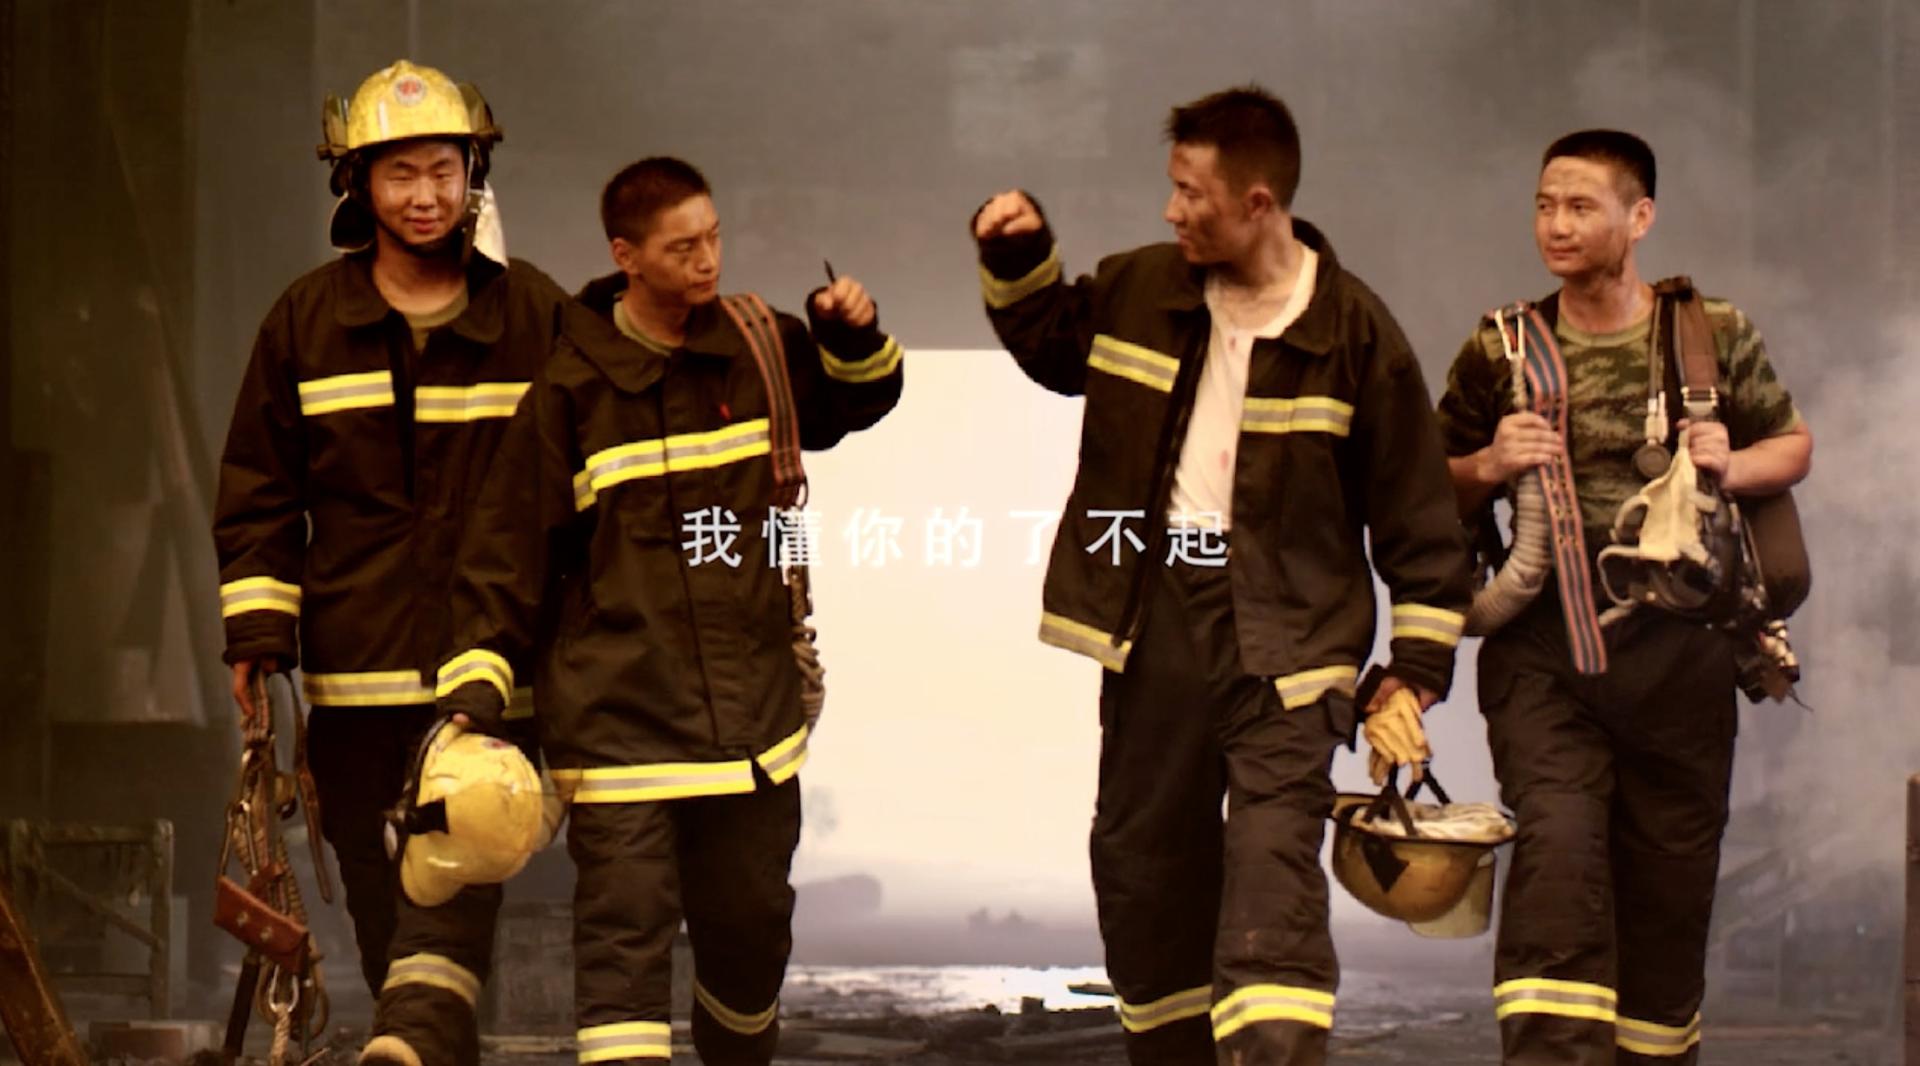 腾讯品牌《消防员篇》